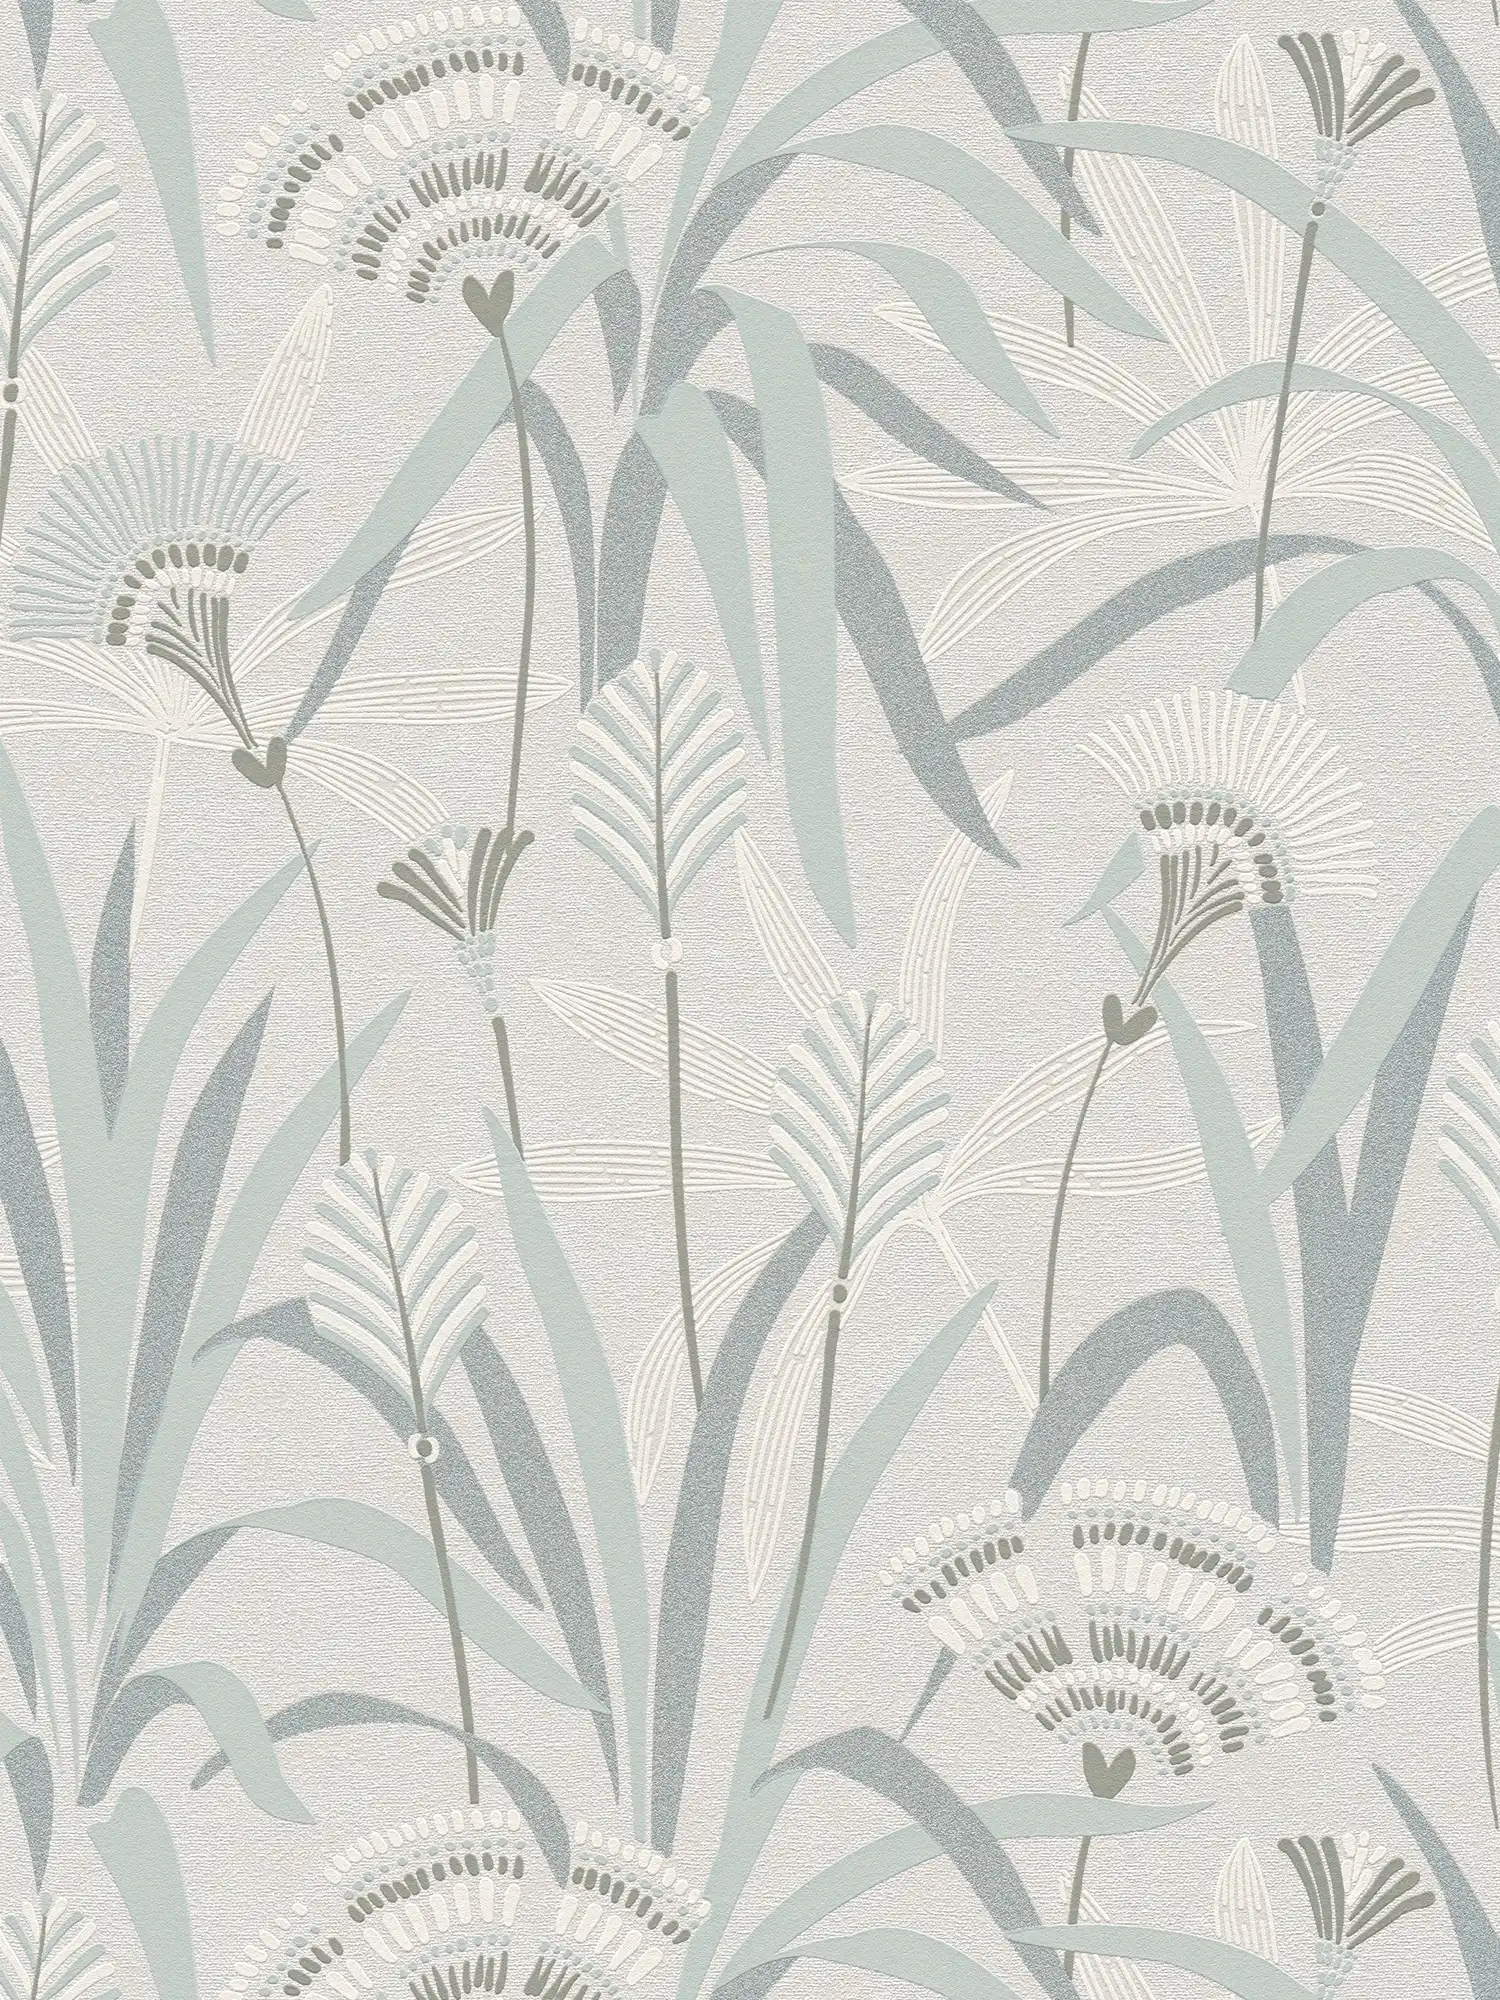         Blumen und Gräser Vliestapete im Retrodesign – Grau, Blau, Grün
    